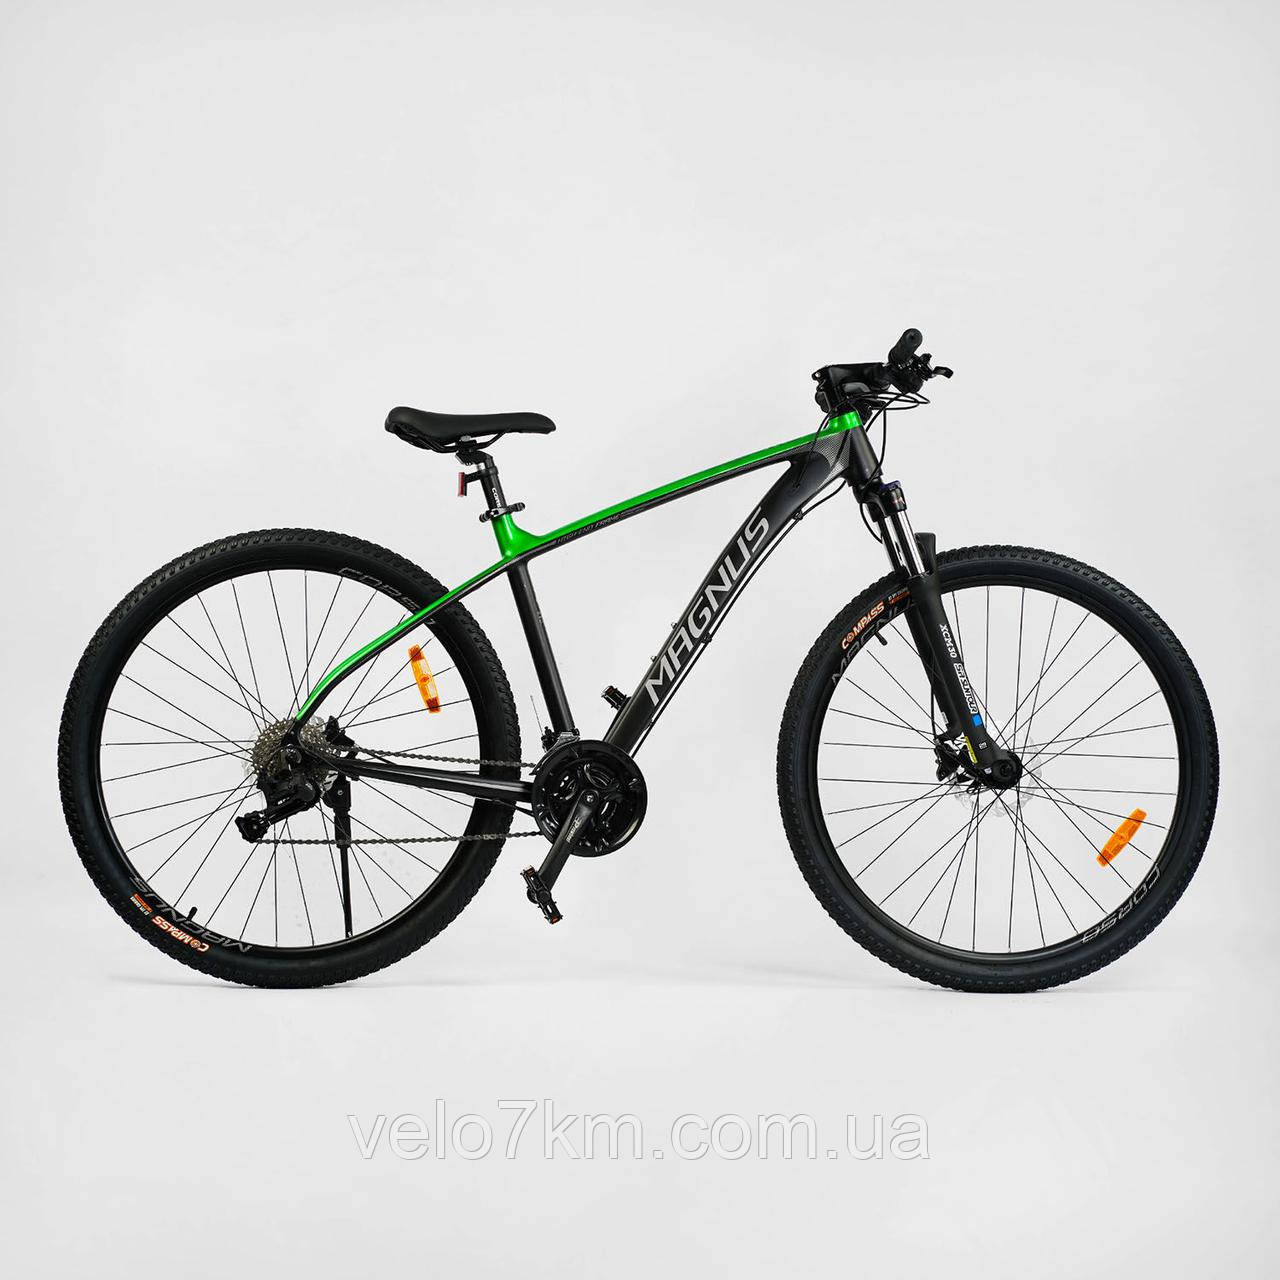 Гірський алюмінієвий велосипед Corso Magnus 29" рама 19" гідравліка Shimano, L-TWOO 27 швидкостей, зібраний на 75%